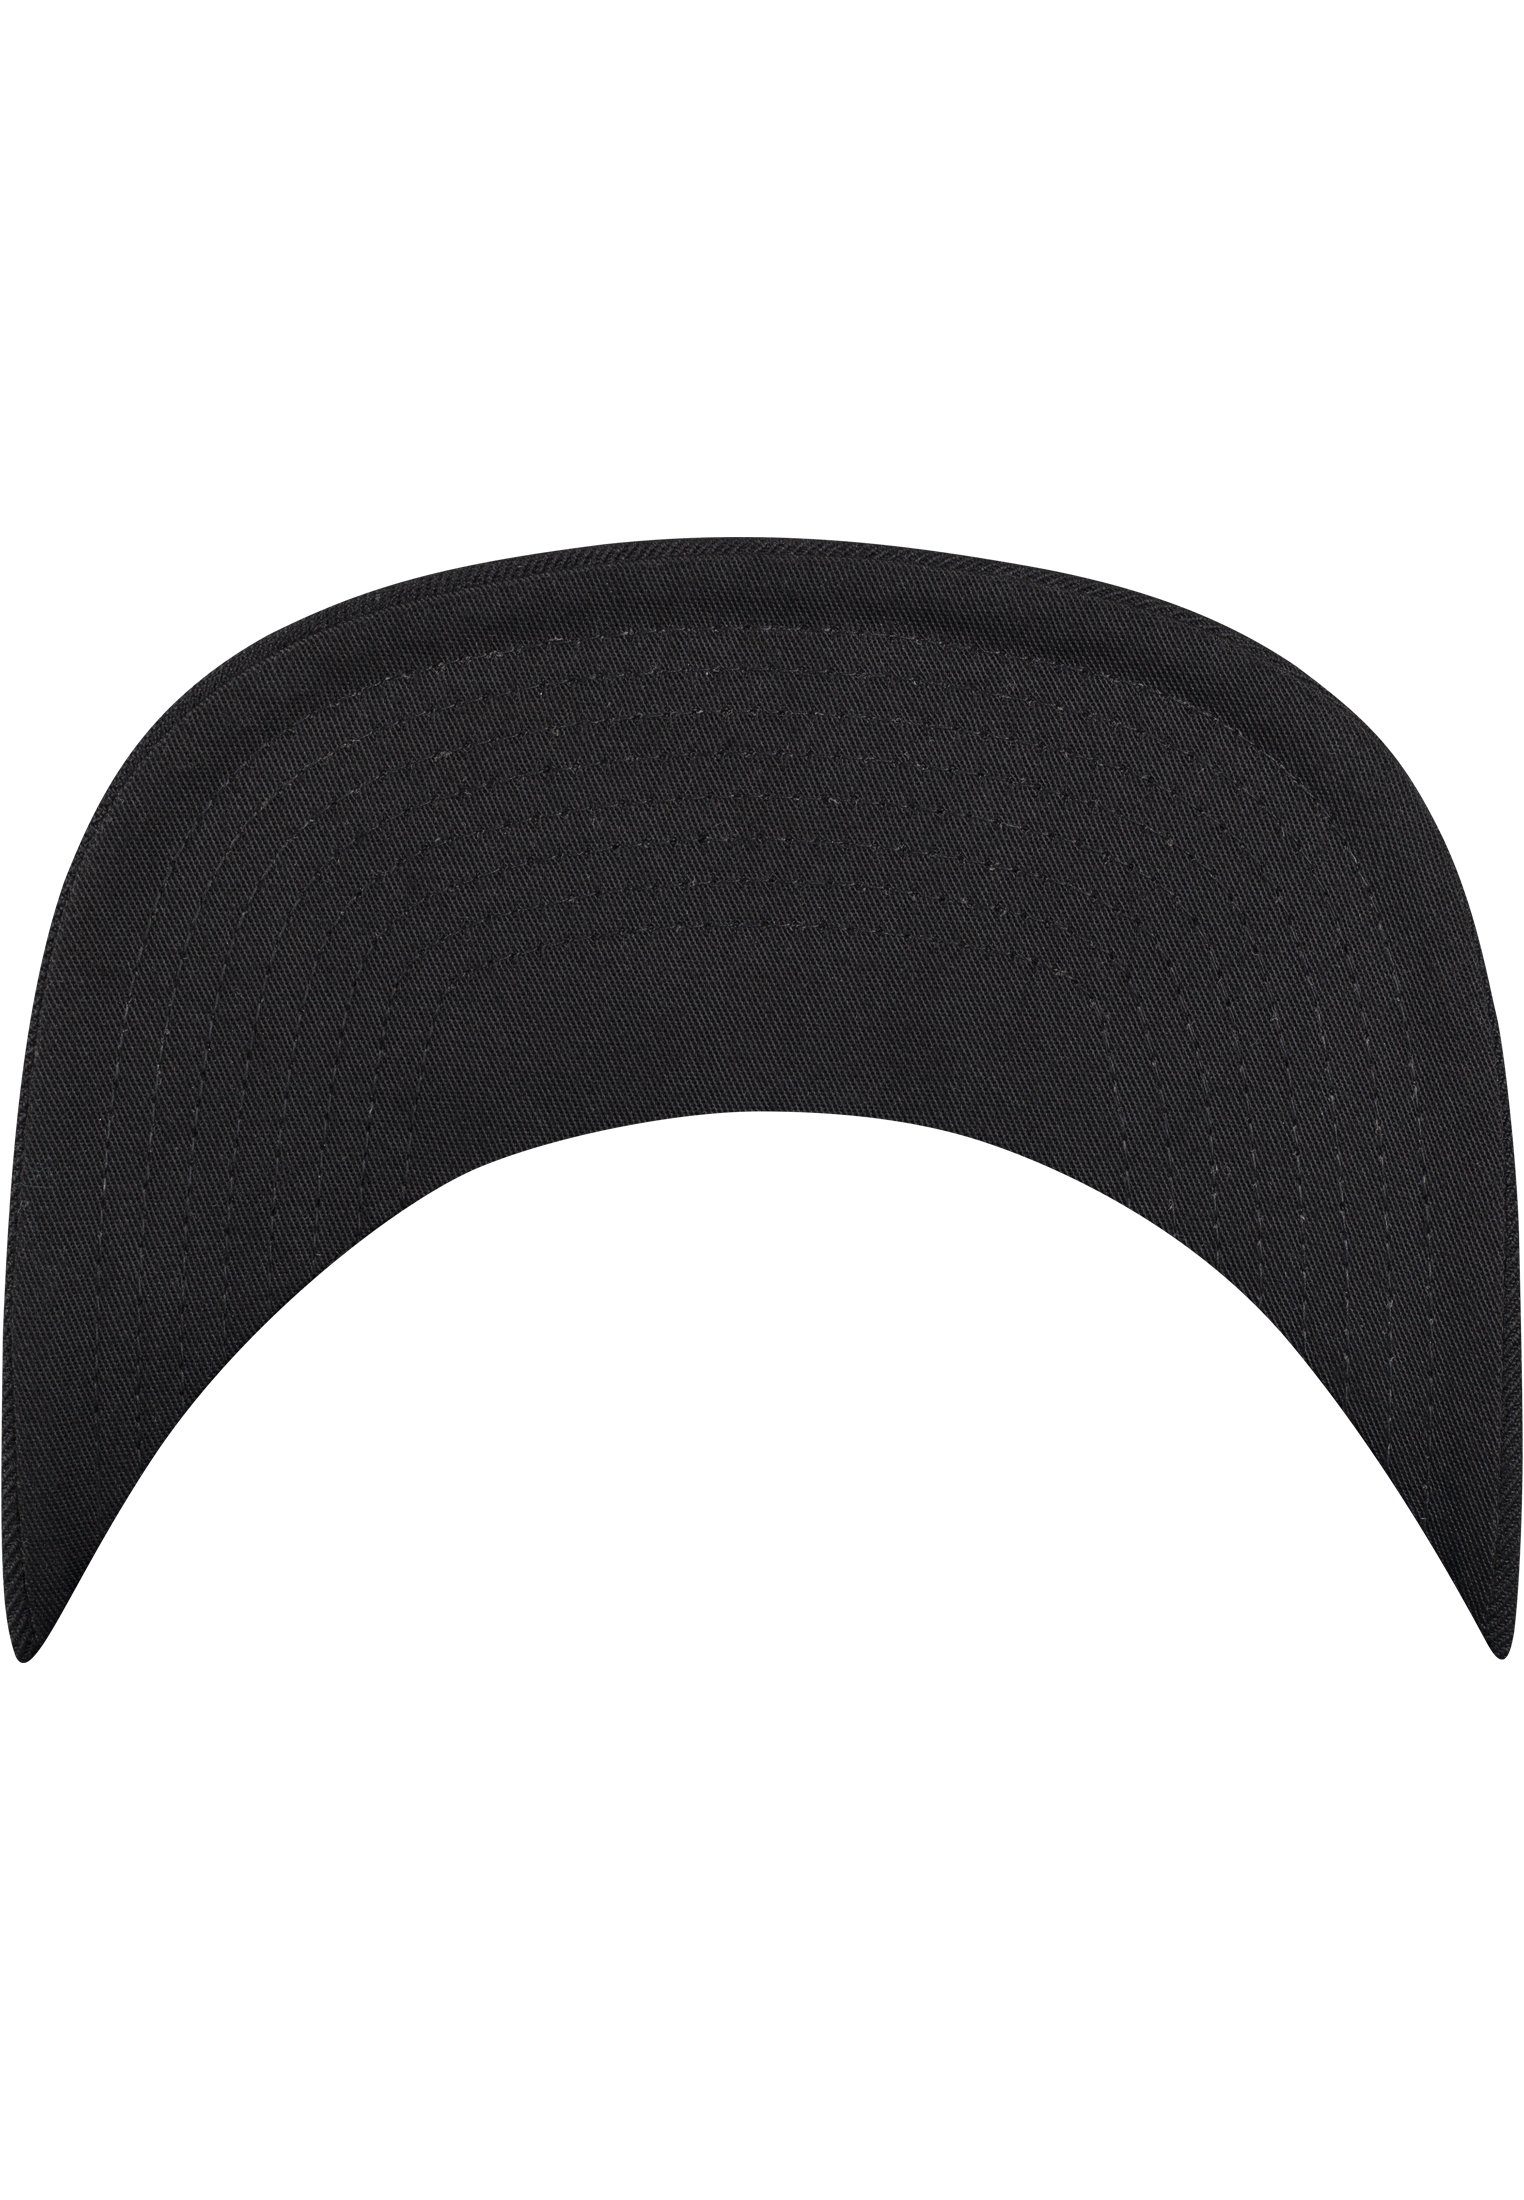 Snapback Snapback Tie Flex Bandana Cap black/black Flexfit